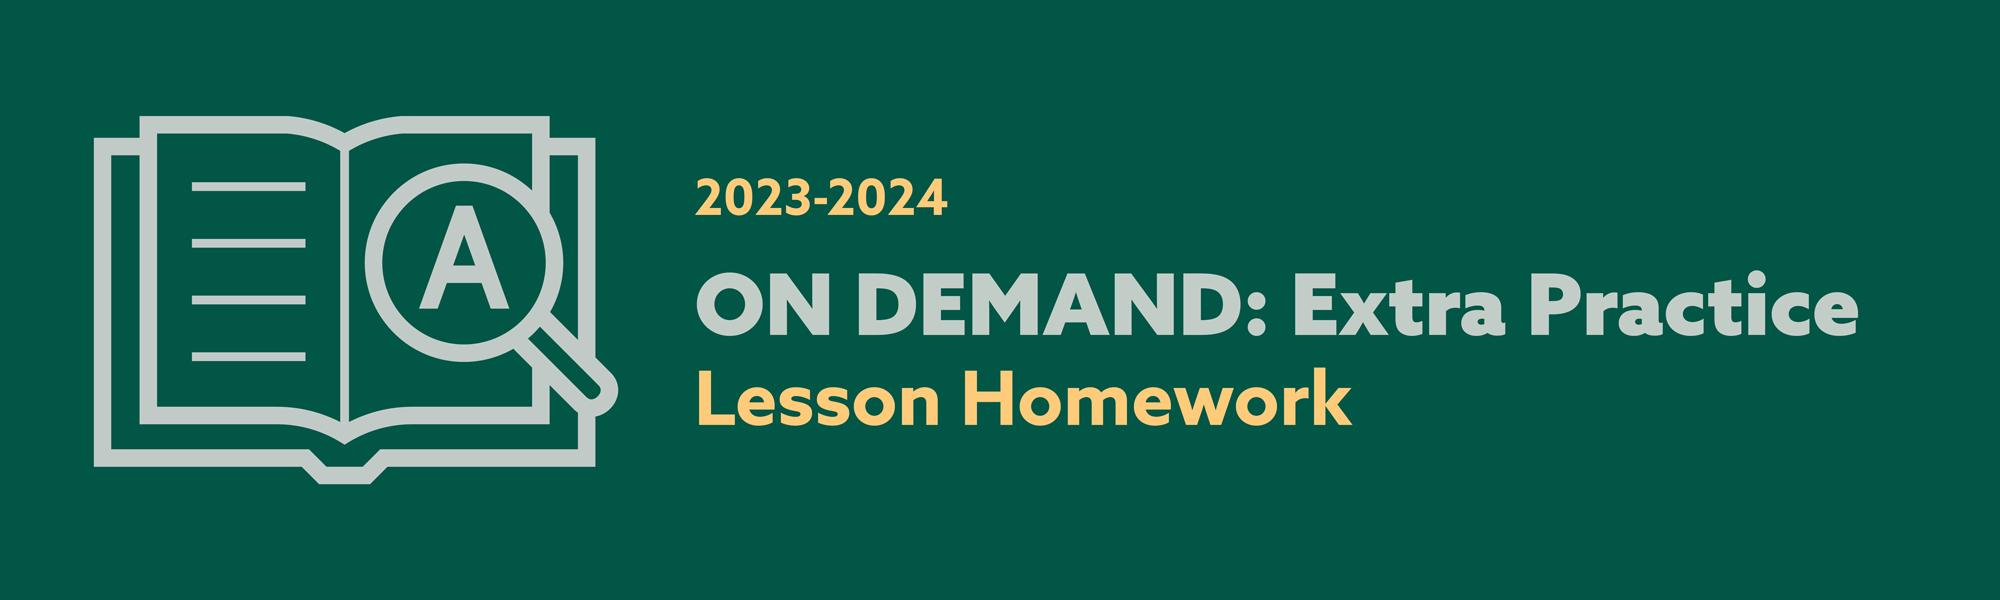 Homework Review 2023-2024